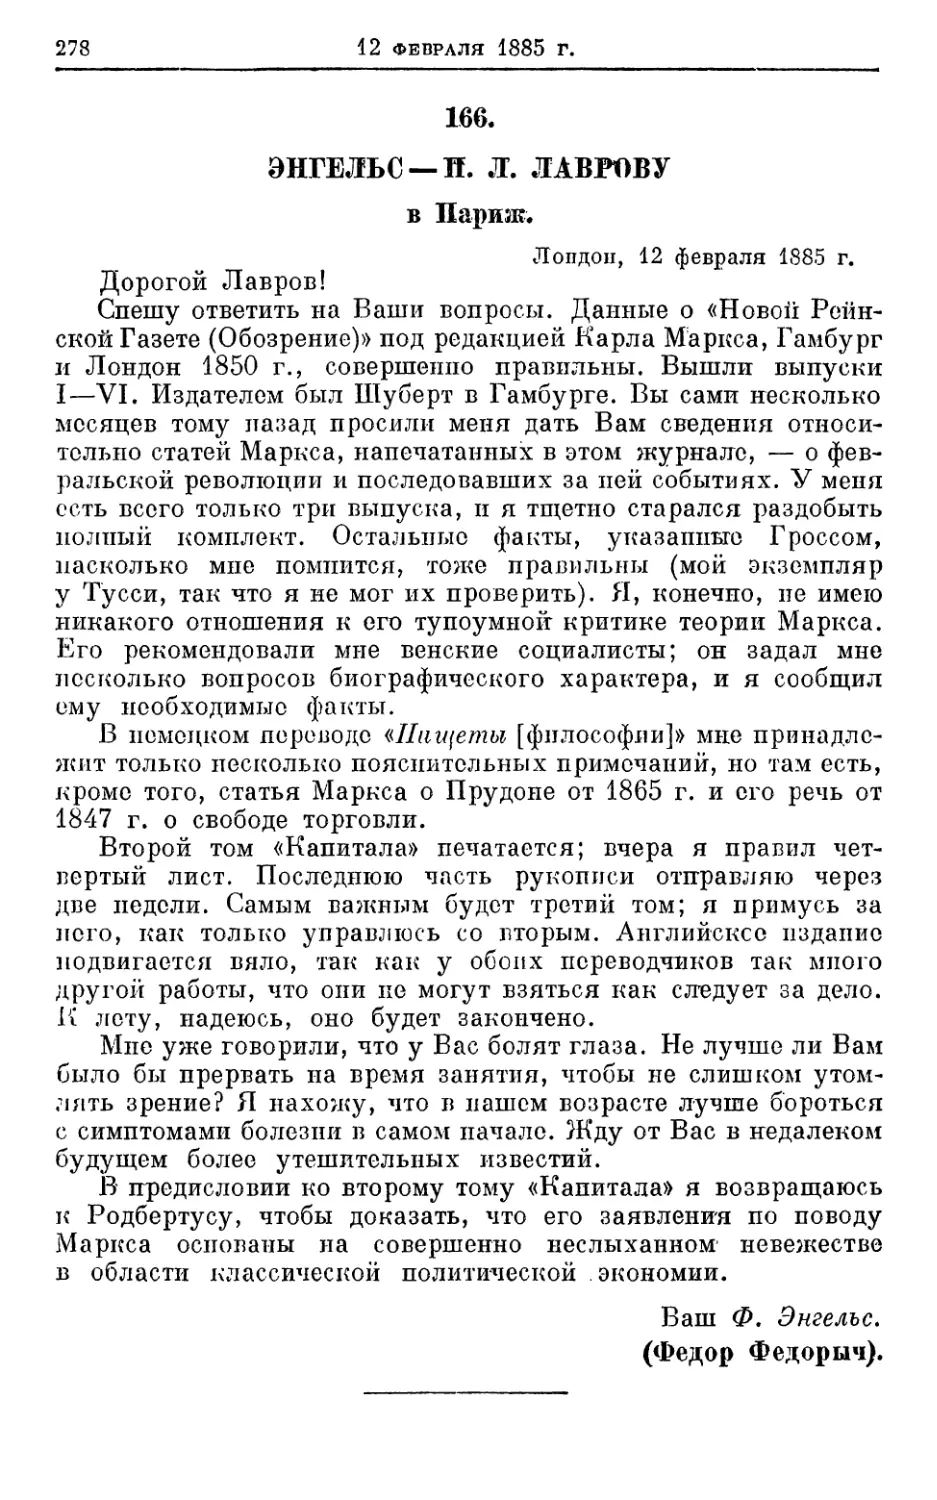 166. Энгельс — П. Л. Лаврову, 12 февраля 1885г